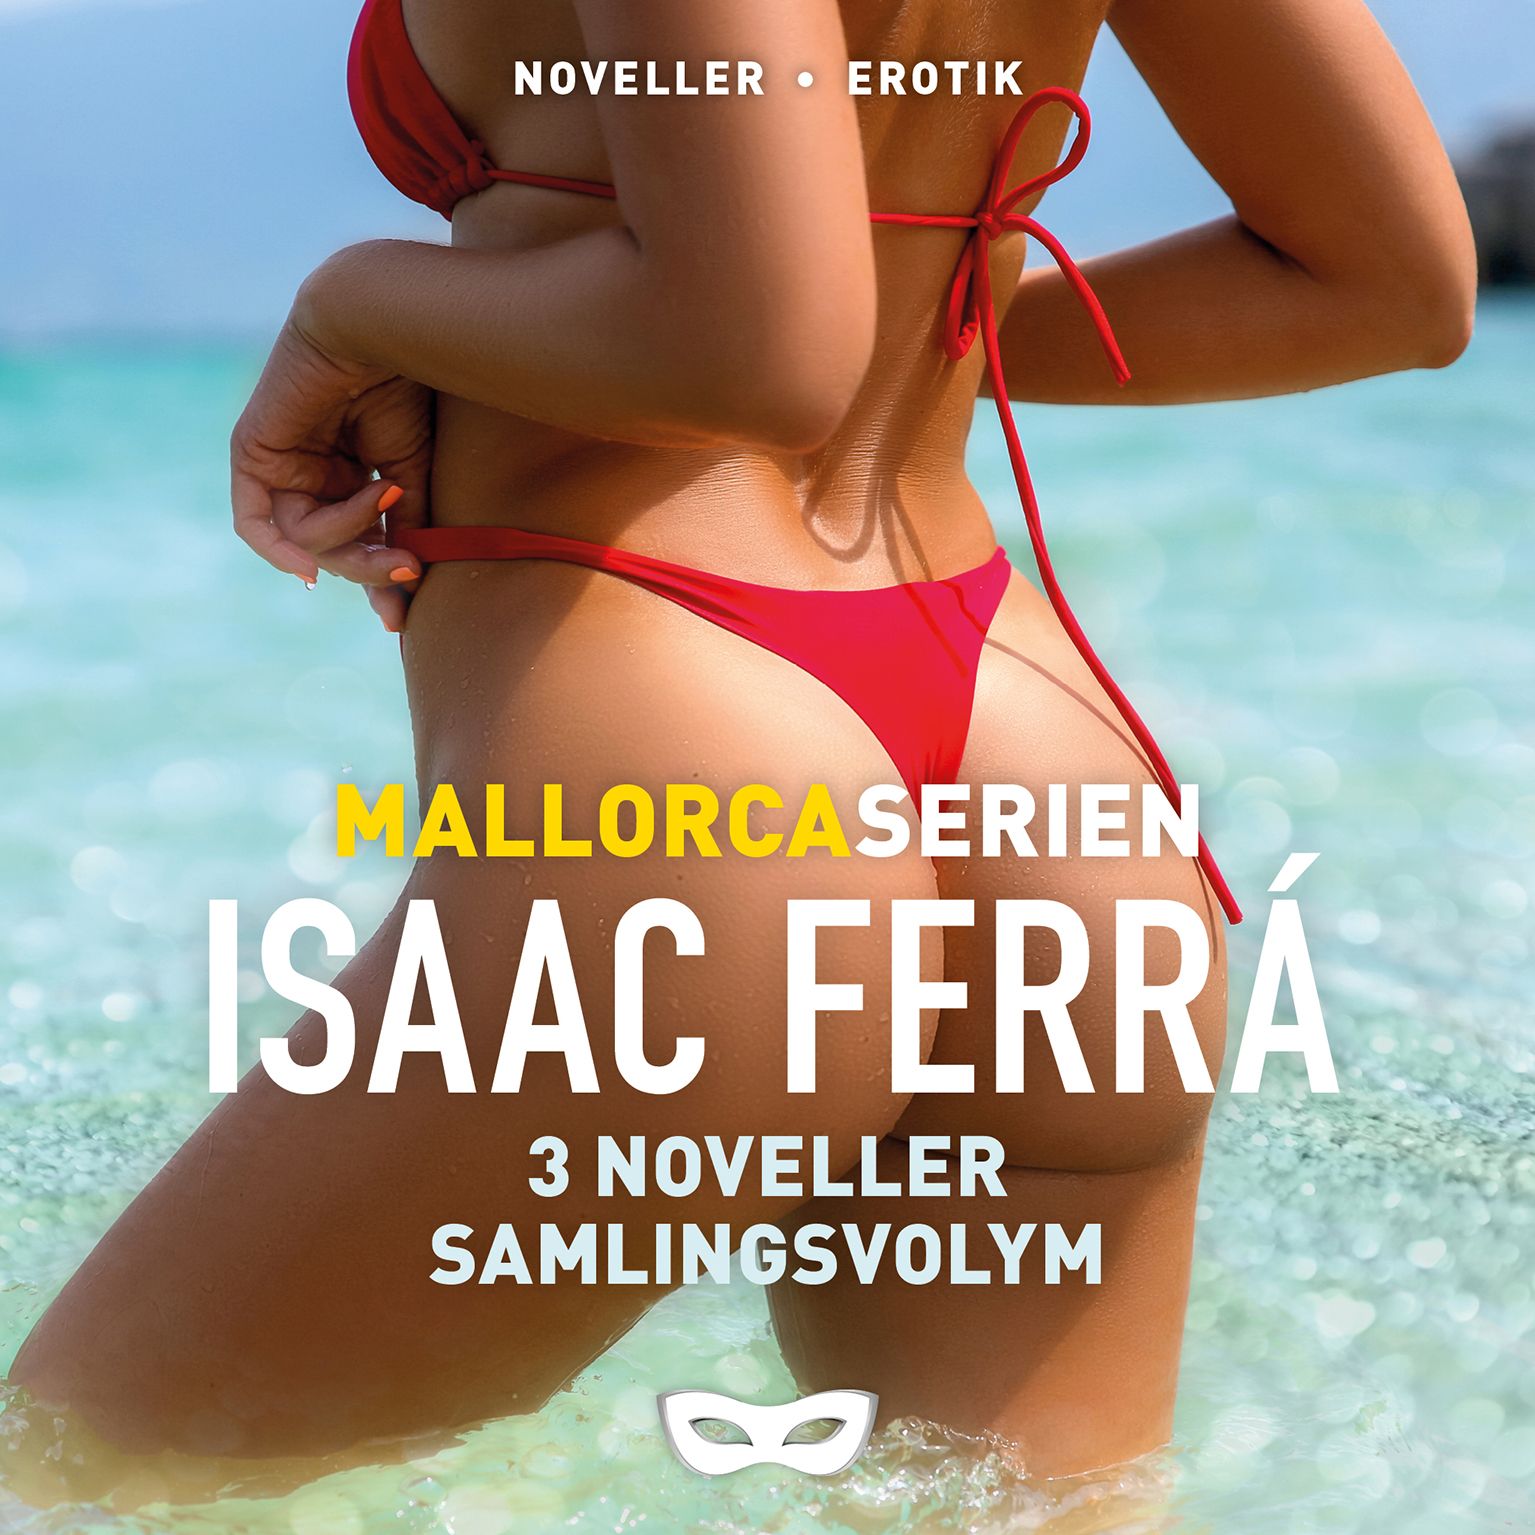 Mallorcaserien 3 noveller (samlingsvolym), ljudbok av Isaac Ferrá